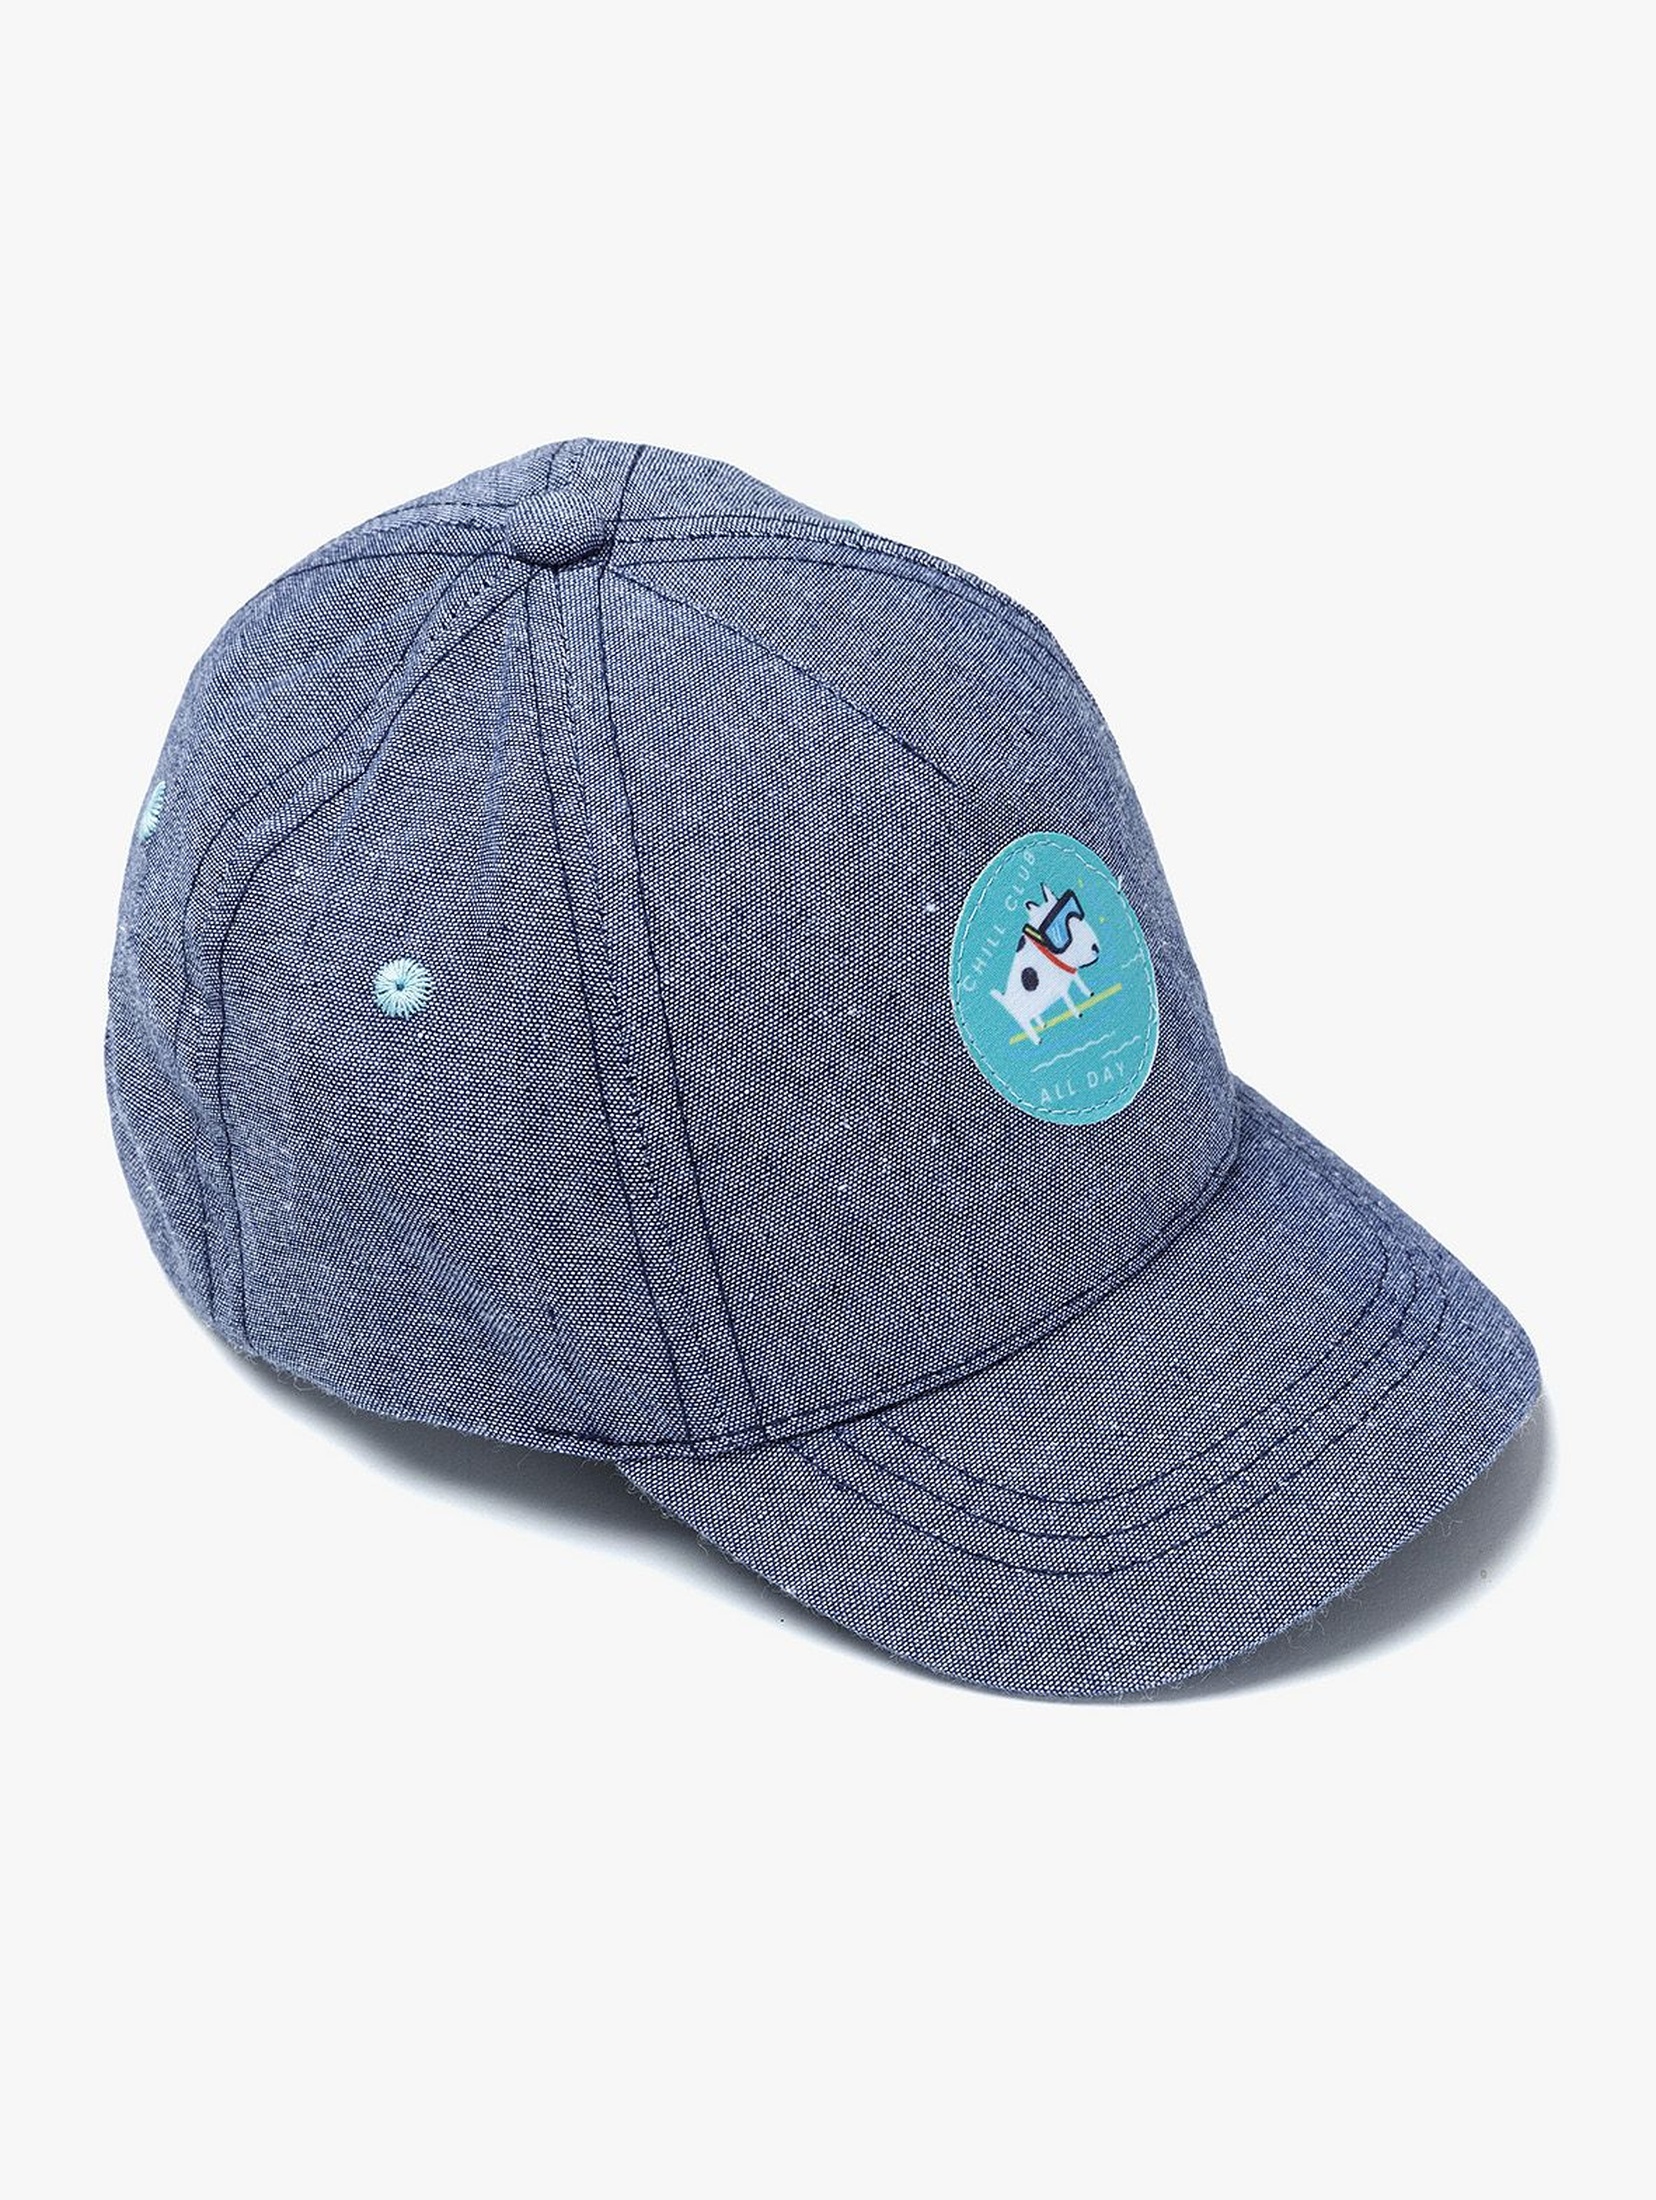 Niebieska czapka z daszkiem dla chłopca